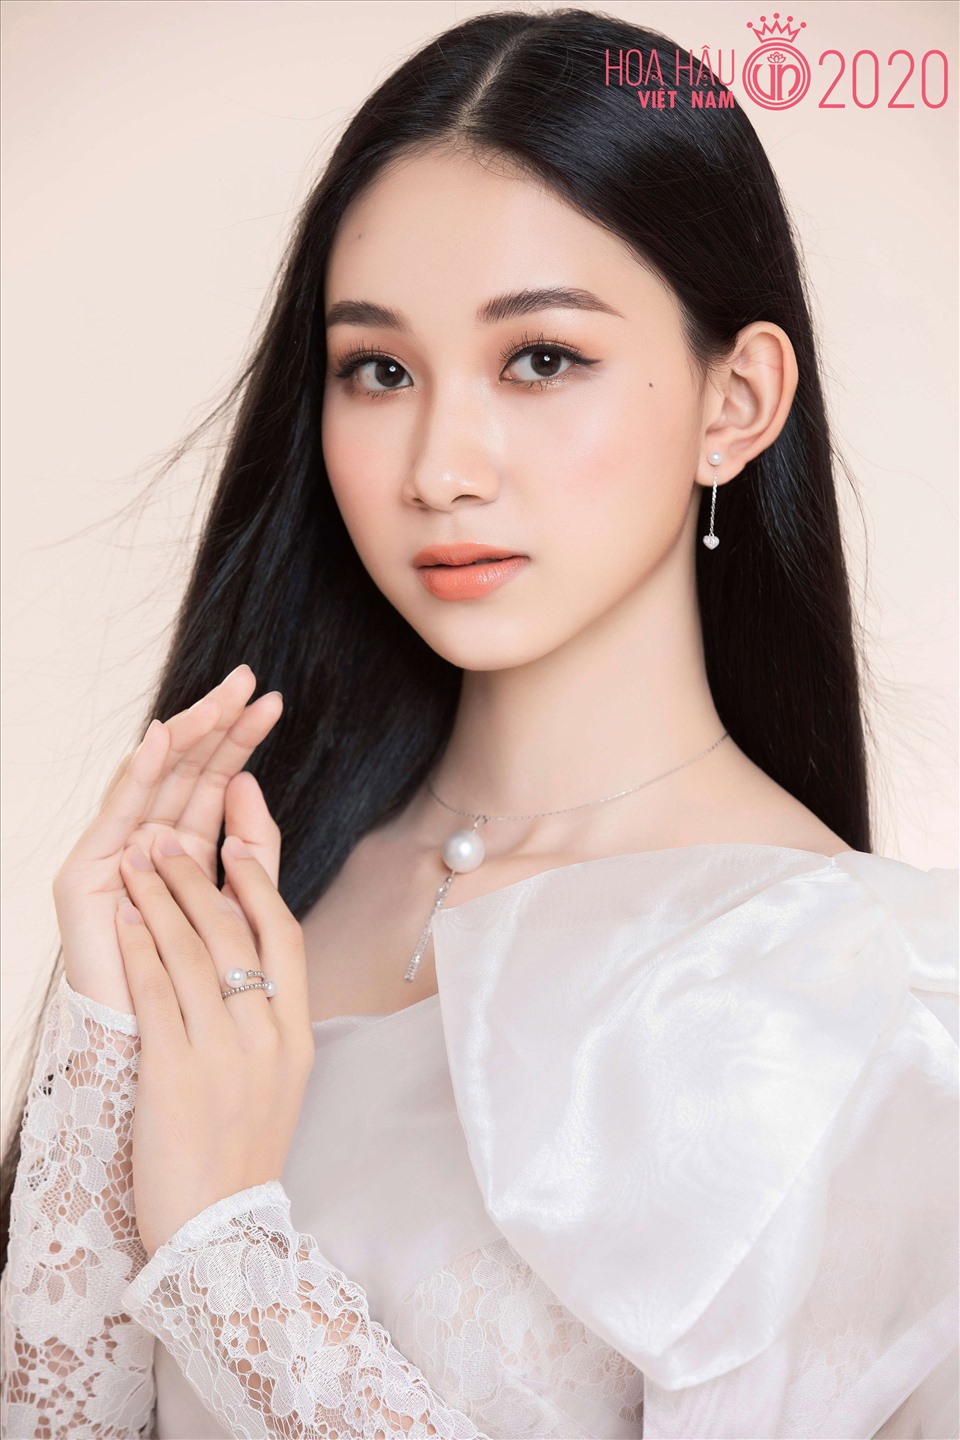 Thí sinh 2k1 của Hoa hậu Việt Nam 2020 gây chú ý vì góc nghiêng hao hao  chị đẹp Baifern